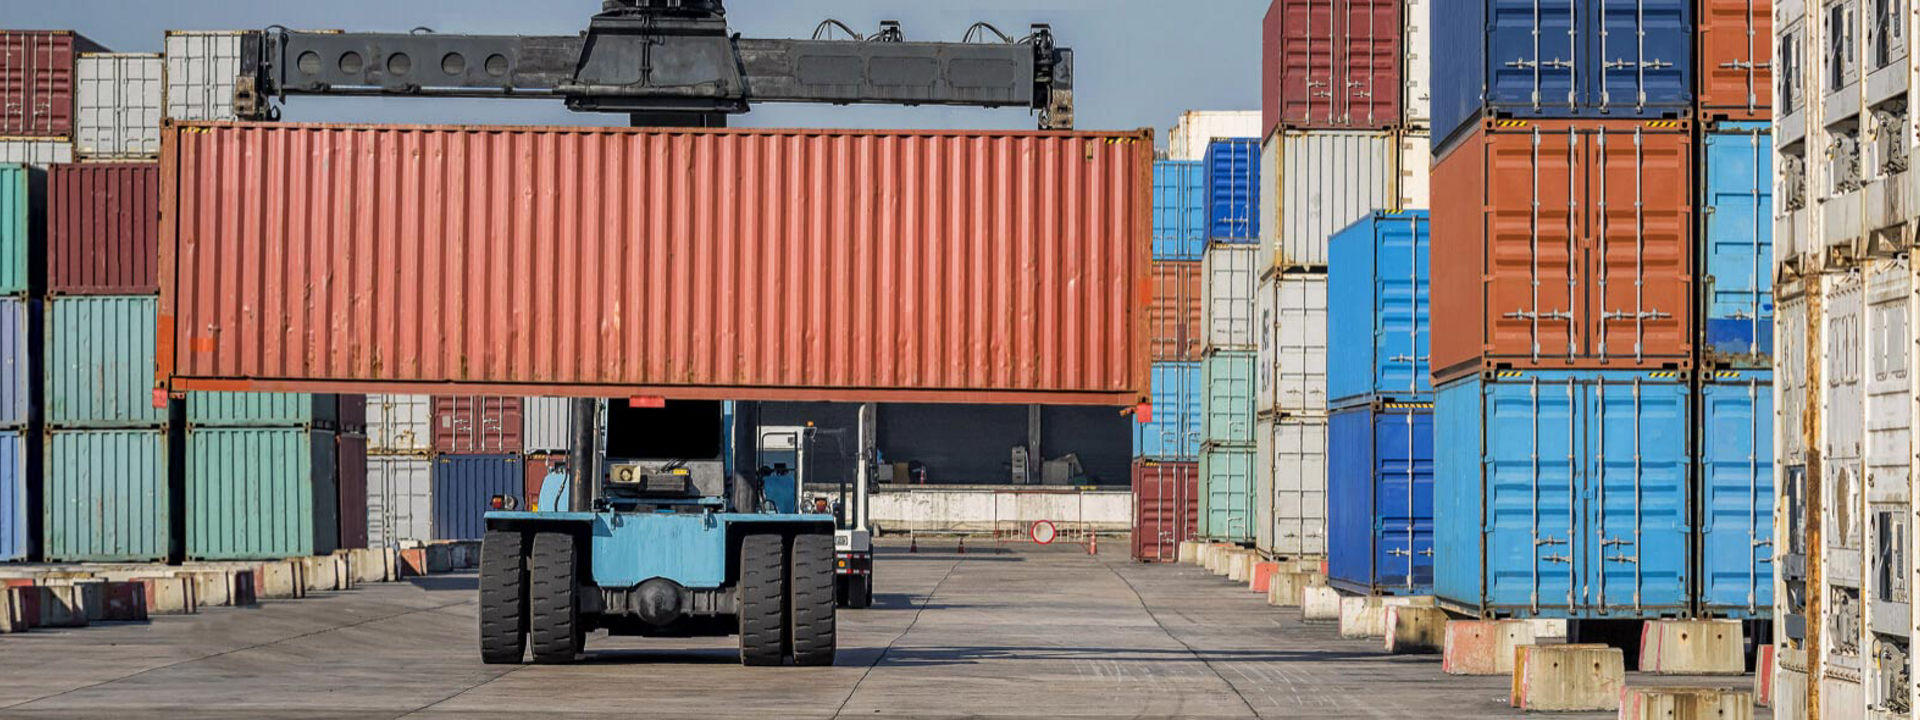 Bridgestone terepjáró gumiabroncsokkal felszerelt targonca szállítmányozási konténereket mozgat egy nagy ipari kikötőben